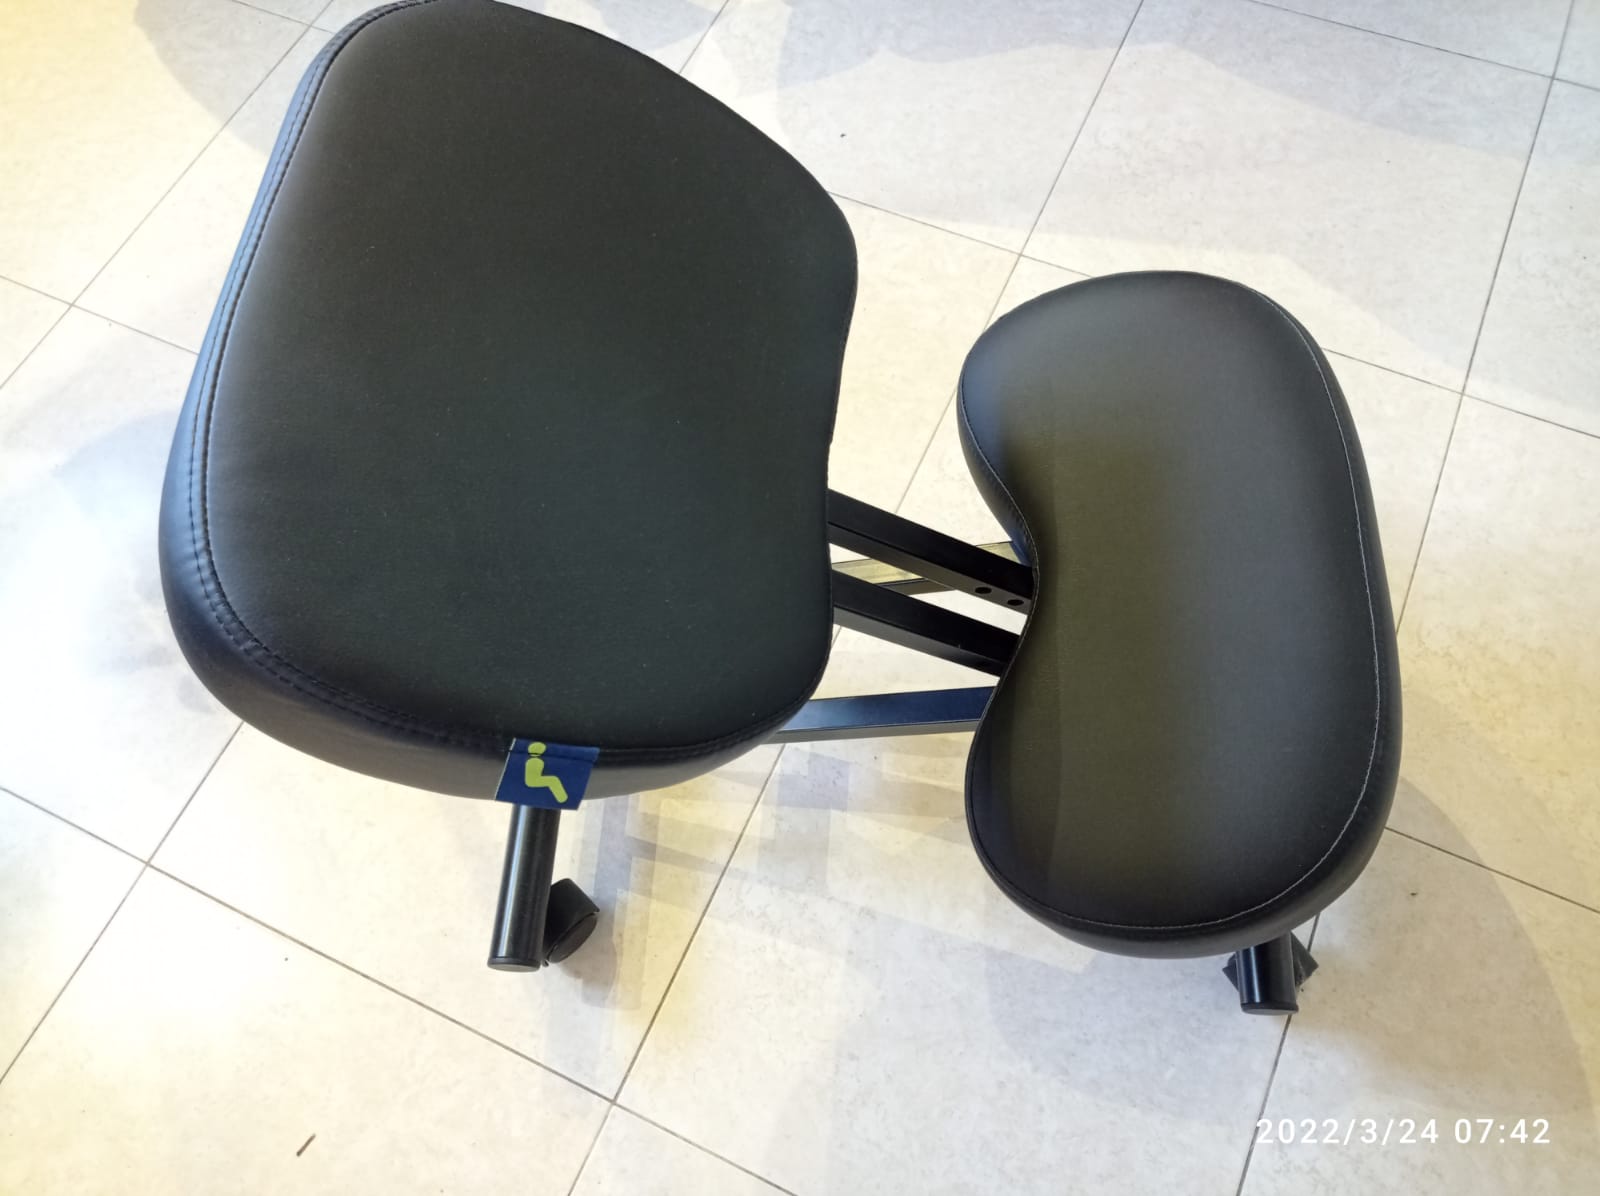 תמונה 1 ,2 כיסאות ברכיים ד"ר גב למכירה בפתח תקווה ריהוט  ריהוט משרדי